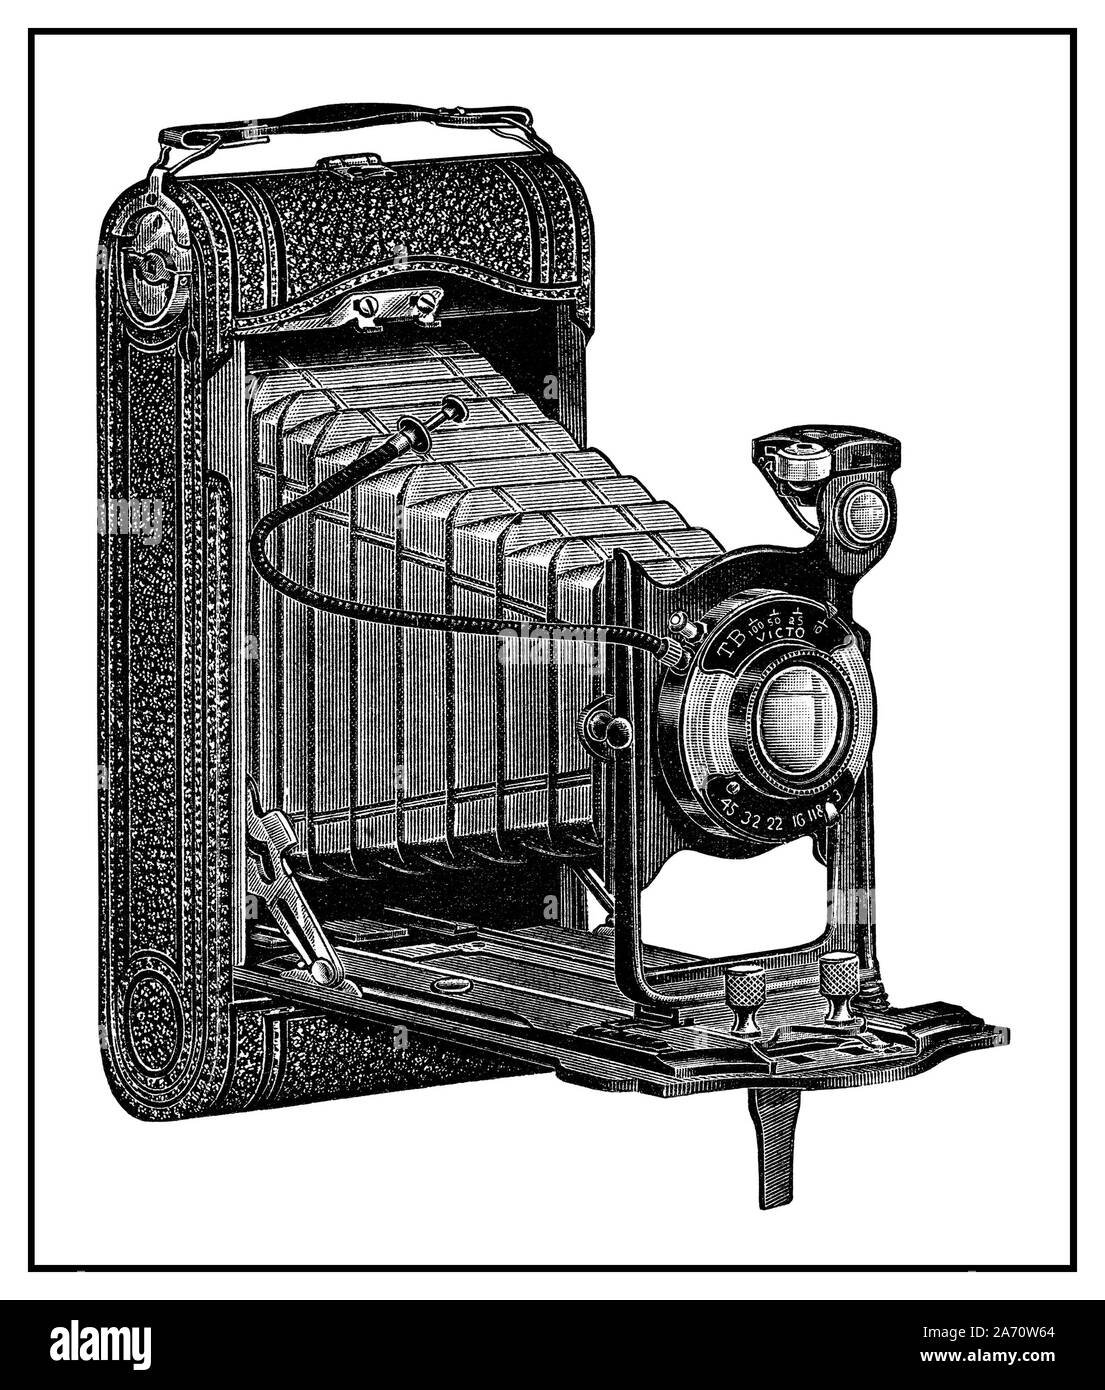 Vintage 1900's fotocamera a soffietto pagina catalogo funzioni di esclusione di pubblicità per Conley telecamere: il modello C Conley rotolo film Camera da $18,85 per $33.55. La figura dal 1916 Sears Roebuck e Co. catalogo. Foto Stock